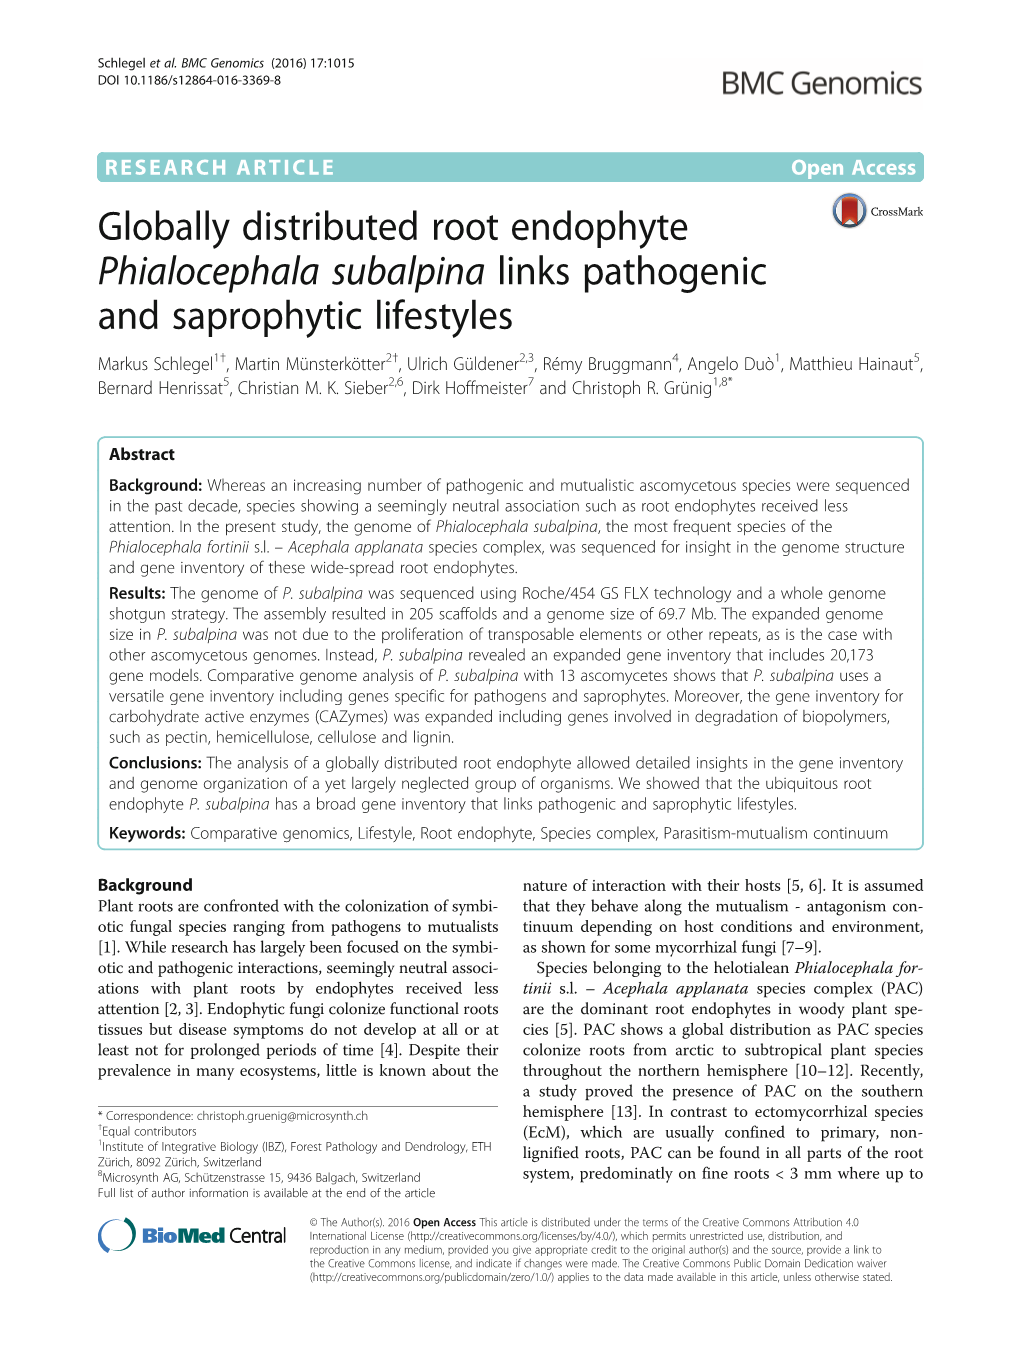 Globally Distributed Root Endophyte Phialocephala Subalpina Links